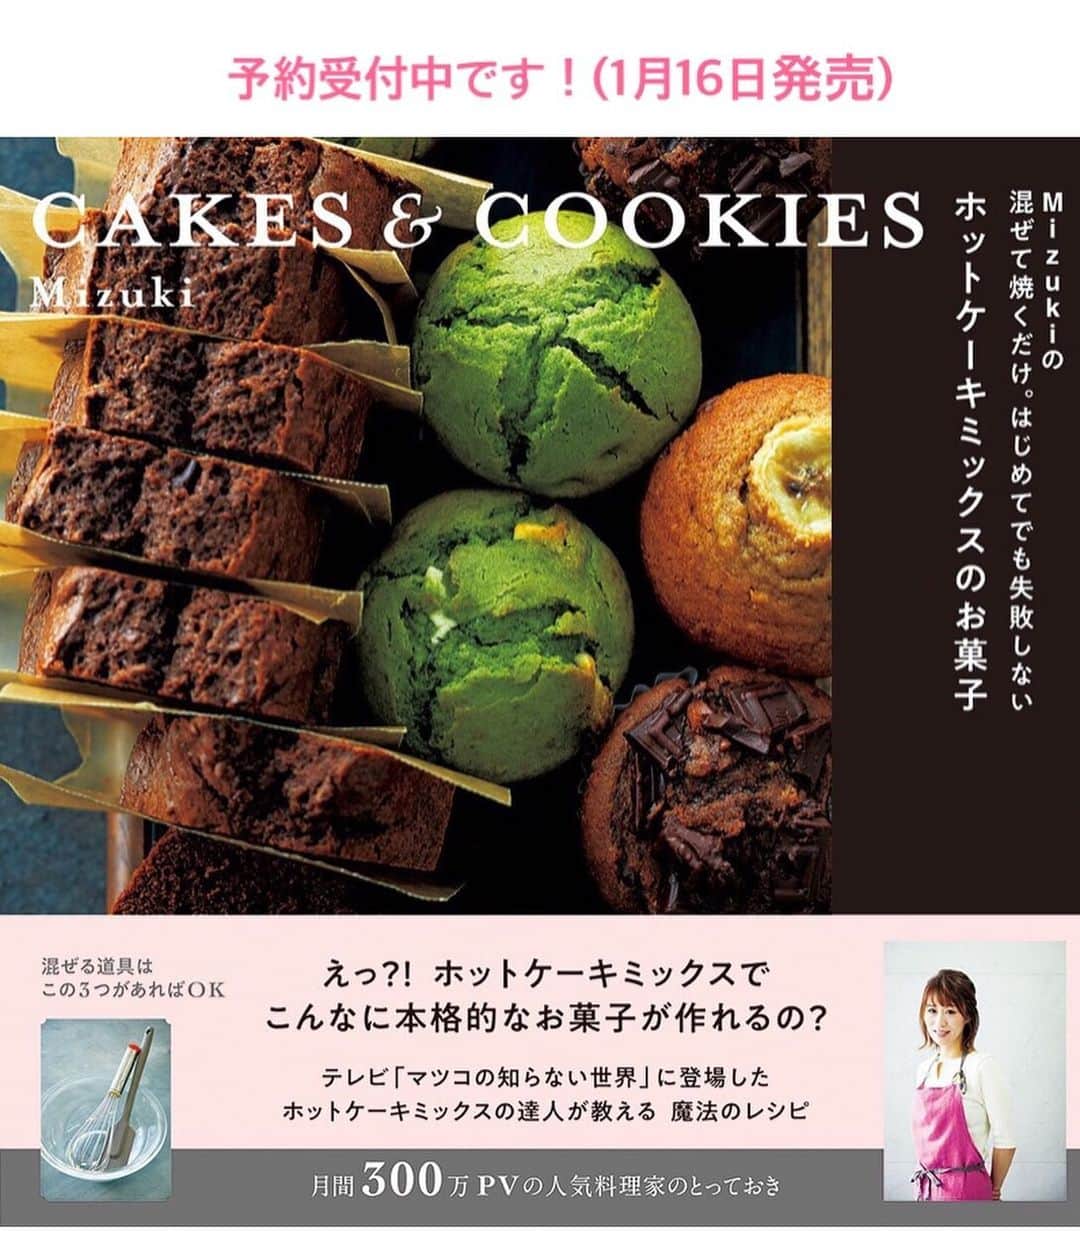 Mizuki【料理ブロガー・簡単レシピ】さんのインスタグラム写真 - (Mizuki【料理ブロガー・簡単レシピ】Instagram)「・﻿ 【レシピ】ーーーーーーーーーー﻿ ♡世界一簡単なホケミクッキー♡﻿ ーーーーーーーーーーーーーーー﻿ ﻿ おはようございます(*^^*)﻿ 今日ご紹介させていただくのは﻿ ［世界一簡単なホケミクッキー］♡﻿ 少ない材料&単純な手順で﻿ ちゃんとサクサクに仕上がりますよ♩﻿ もちろん型も必要なく﻿ 思い立ったらすぐに作れます！！﻿ ﻿ 今回はチョコチップを加えましたが﻿ 刻んだ板チョコやドライフルーツでも◎﻿ よかったらお試し下さいね(*^^*)﻿ ﻿ ﻿ ーーーーーーーーーーーーーーー﻿ 【18個分】﻿ 卵...1個﻿ サラダ油...20g﻿ ホットケーキミックス...150g﻿ チョコチップ(ポイント参照)...30g﻿ ﻿ 1.ボウルに卵とサラダ油を入れ、泡立て器でよく混ぜる。続けてホットケーキミックスを加えてゴムベラで混ぜる。粉っぽさがなくなってきたらチョコチップも加えて更に混ぜ、最後は手でまとめる。﻿ 2.3cm大に丸め、クッキングシートを敷いた天板に並べ、170度に予熱したオーブンで15分焼く。﻿ ーーーーーーーーーーーーーーー﻿ ﻿ ﻿ 《ポイント》﻿ ♦︎チョコチップの代わりに刻んだ板チョコやドライフルーツを入れても♩なにも入れなければ甘さ控え目のクッキーに♩﻿ ﻿ ﻿ ﻿ ＿＿＿＿＿＿＿＿＿＿＿＿＿＿＿＿＿﻿ ＿＿＿＿＿＿＿＿＿＿＿＿＿＿＿＿＿﻿ 【お知らせ】﻿ 🎀新刊予約開始となりました🎀﻿ 『混ぜて焼くだけ。﻿ #ホットケーキミックスのお菓子 』﻿ 🔹ハイライトにリンクあります♩🔹﻿ ＿＿＿＿＿＿＿＿＿＿＿＿＿＿＿＿＿﻿ ＿＿＿＿＿＿＿＿＿＿＿＿＿＿＿＿＿﻿ ﻿ ﻿ ﻿ #ブログ更新しました﻿ ブログはホームのリンクよりご覧下さい↓﻿ @mizuki_31cafe﻿ 【Mizuki公式ラインブログ】﻿ https://lineblog.me/mizuki_official/﻿ ﻿ ﻿ 【お知らせ】﻿ ストーリーズでは一日数回﻿ 別レシピをご紹介しております(*^^*)﻿ ＊コメントは最新の投稿に下さいますよう﻿ お願い致しますm(_ _)m﻿ ﻿ ﻿ ﻿ #世界一簡単なホケミクッキー#ホットケーキミックス#クッキー#HM#お菓子﻿ #Mizuki#簡単レシピ#時短レシピ#節約レシピ#料理#レシピ#ブログ#フーディーテーブル#おうちごはん#おうちカフェ#デリスタグラマー#料理好きな人と繋がりたい#料理ブロガー#おうちごはんlover#器#マカロニメイト﻿ #foodpic#cooking#recipe#lin_stagrammer#世界一簡単なホケミクッキーm」12月25日 6時57分 - mizuki_31cafe